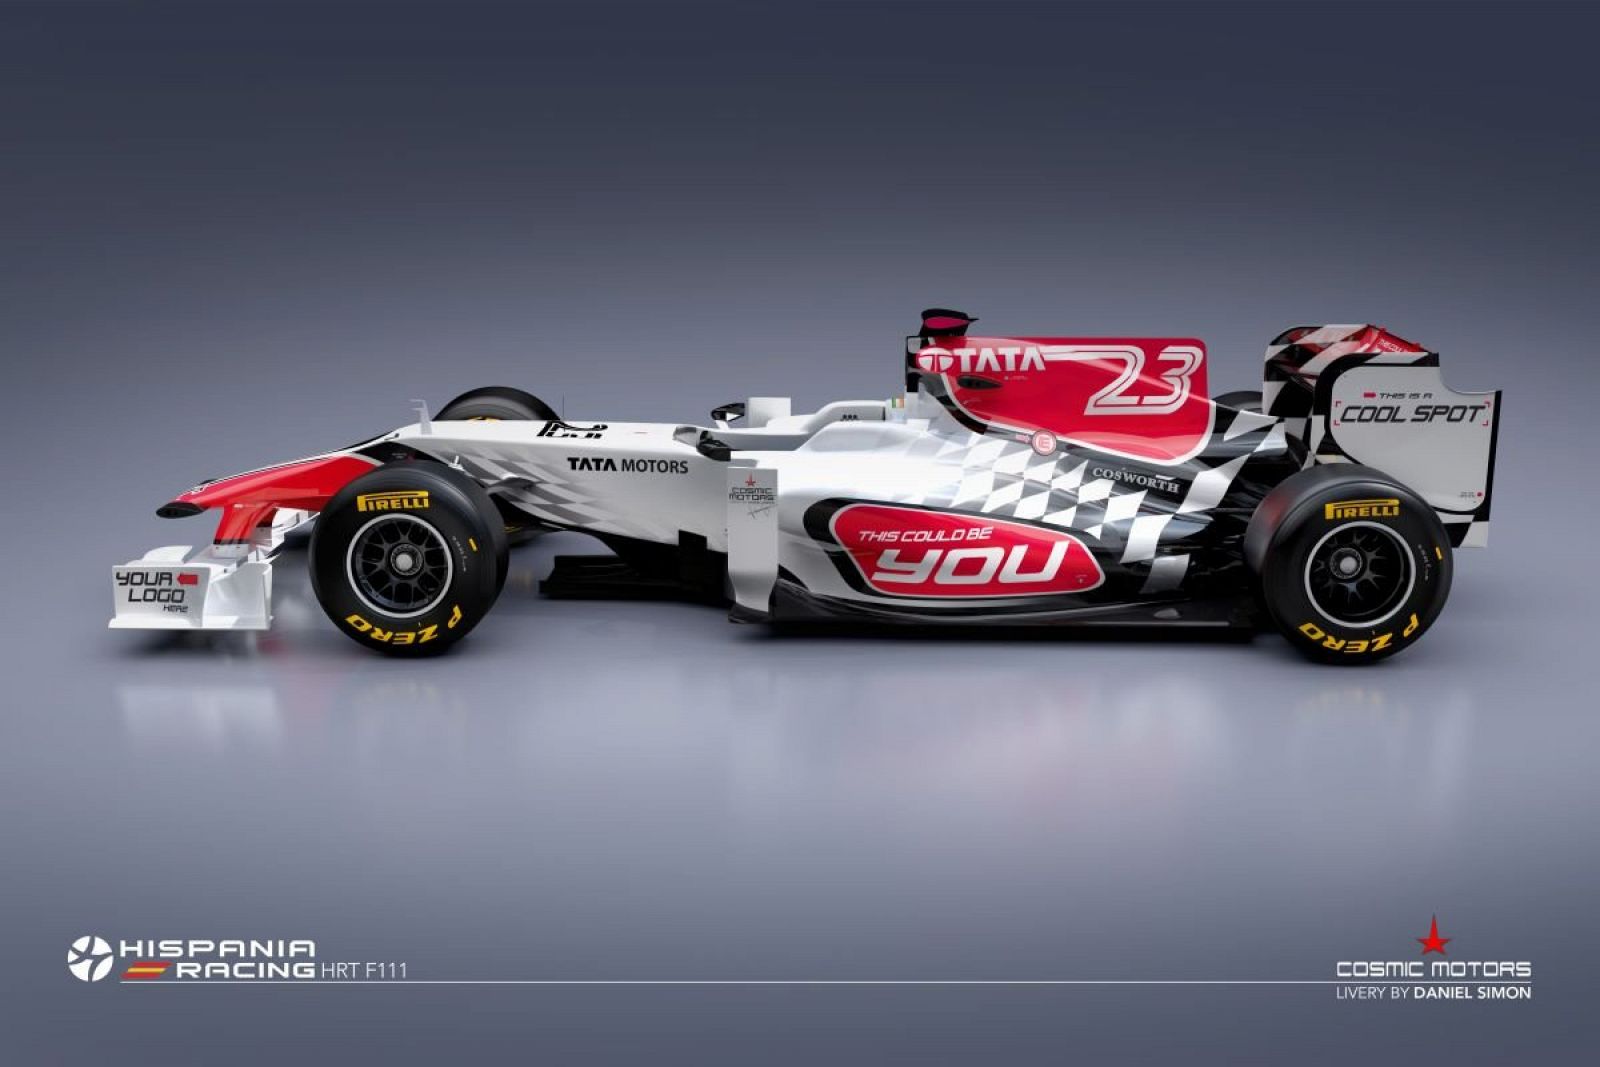 El nuevo F 111 de la escudería Hispania Racing que competirá en el Mundial de Fórmula Uno.